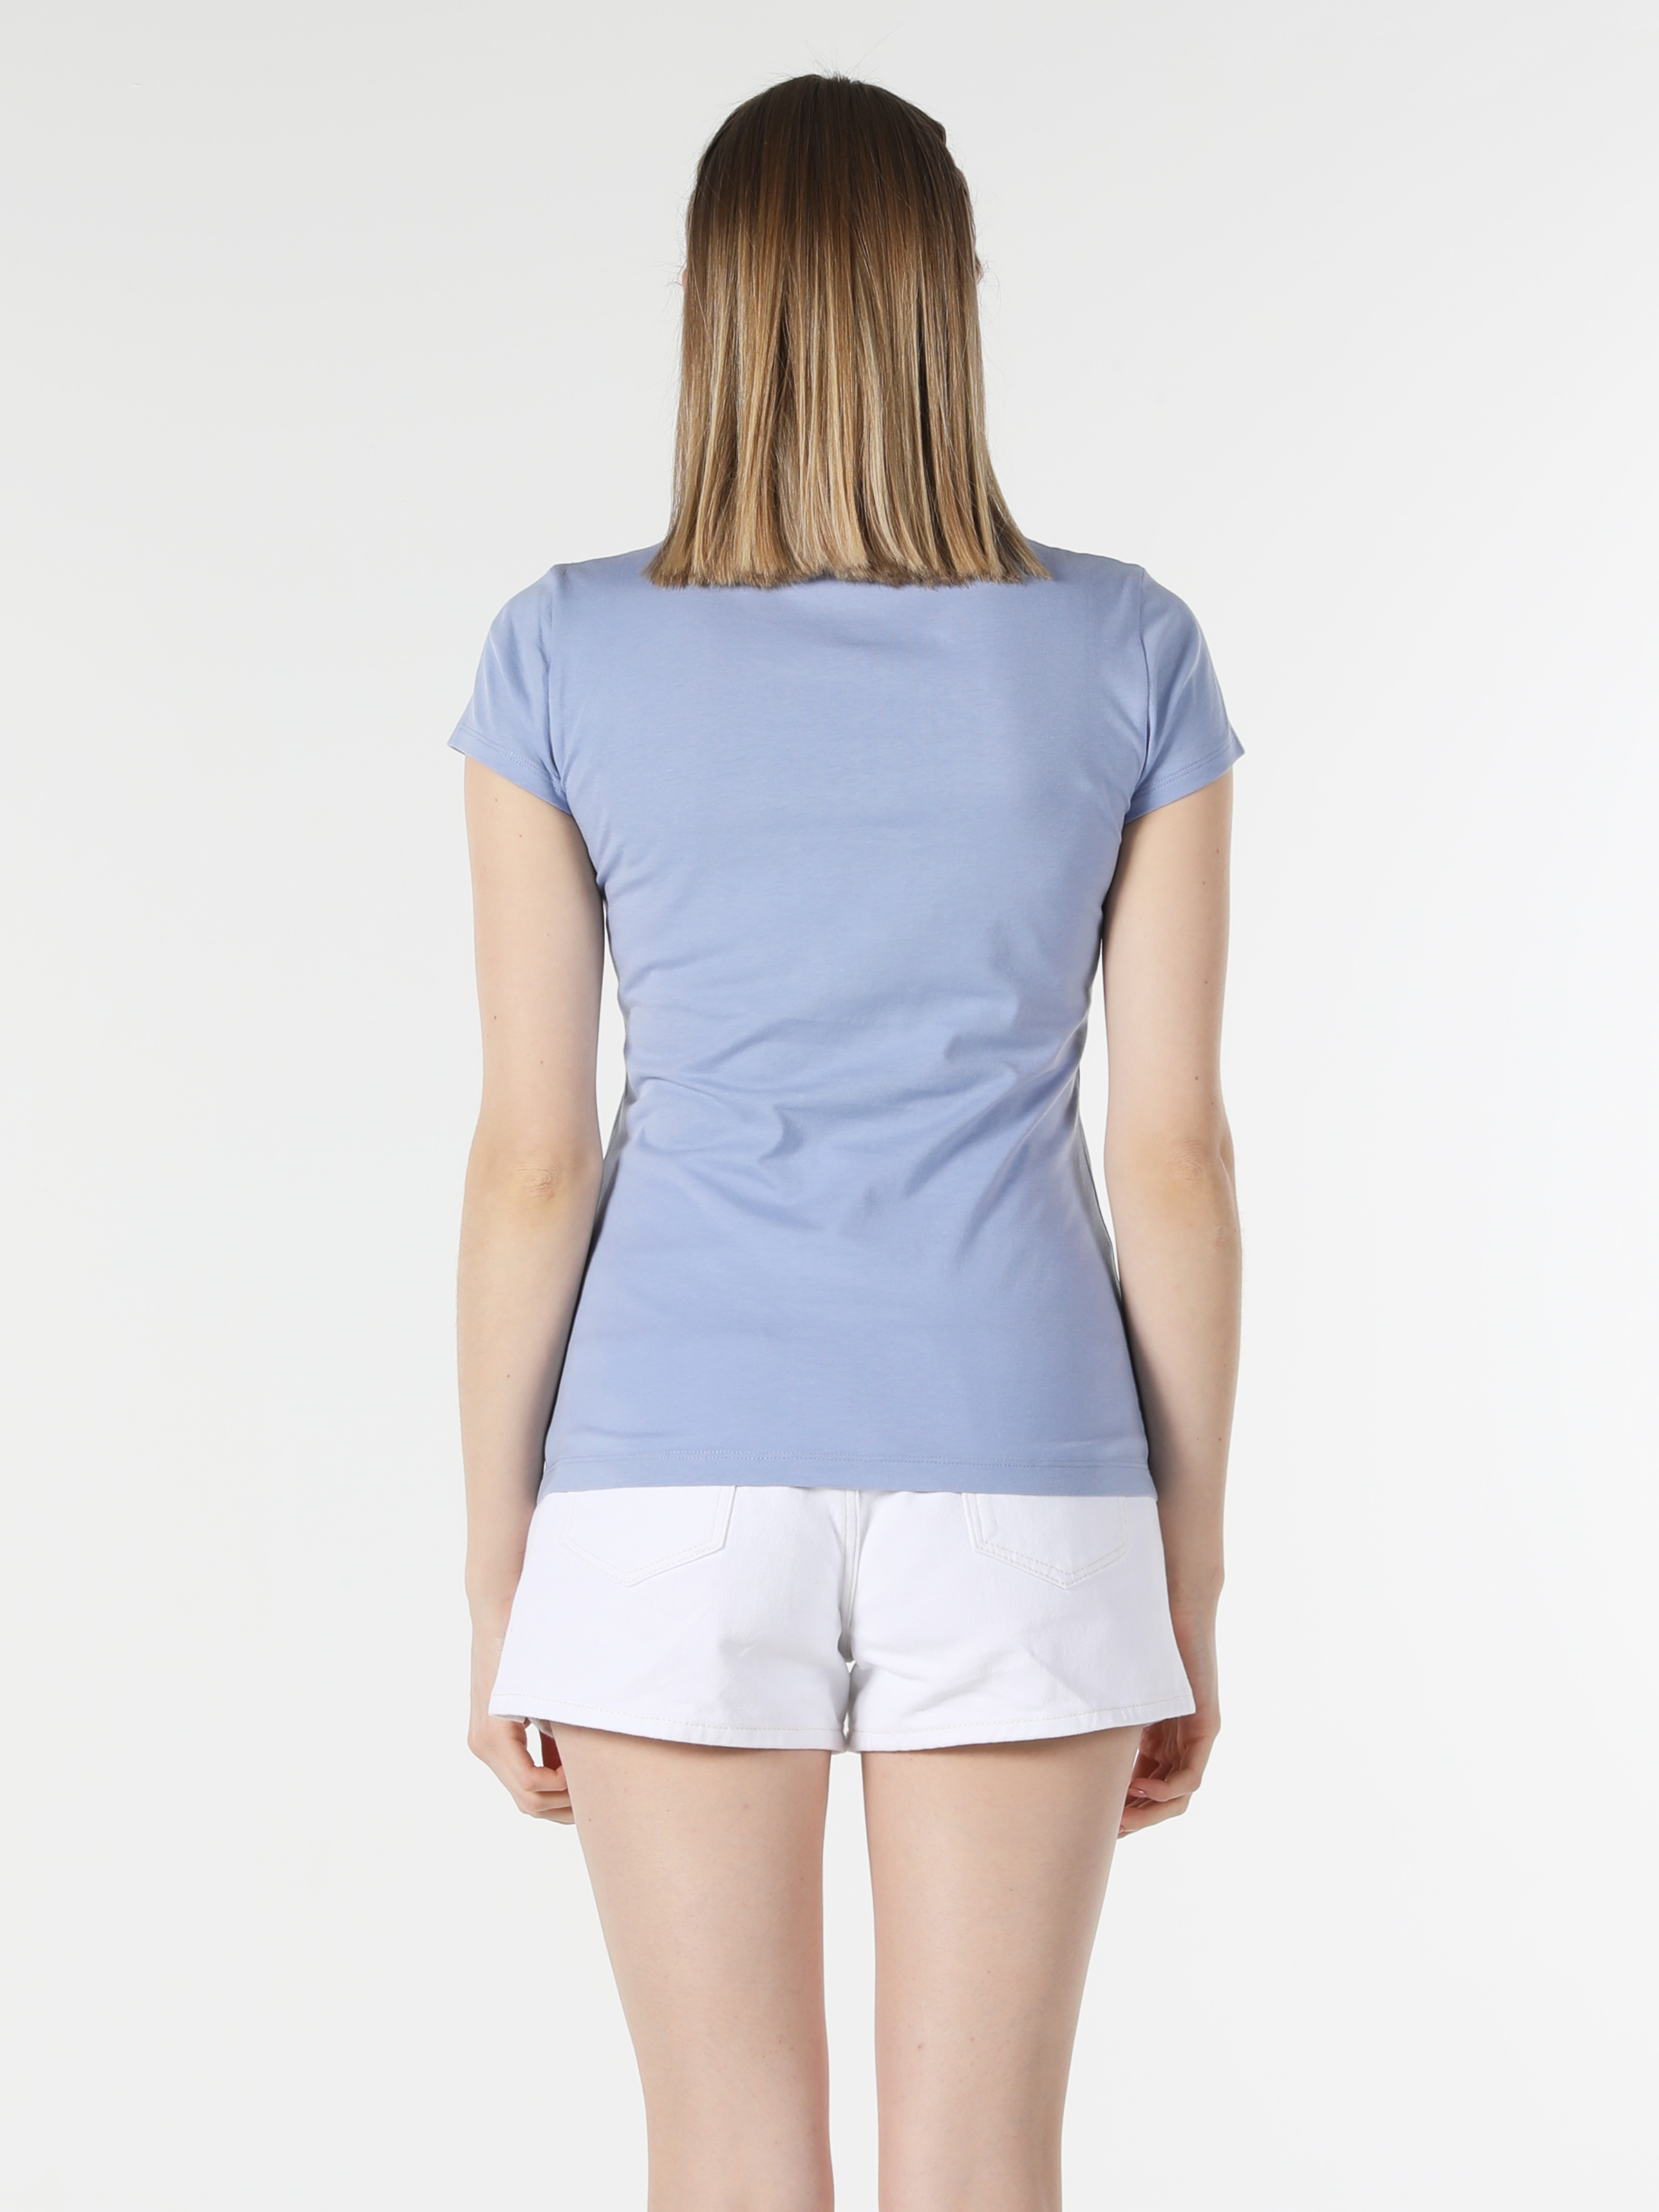 Afișați detalii pentru Tricou Cu Maneca Scurta De Dama Albastru Slim Fit  CL1058134